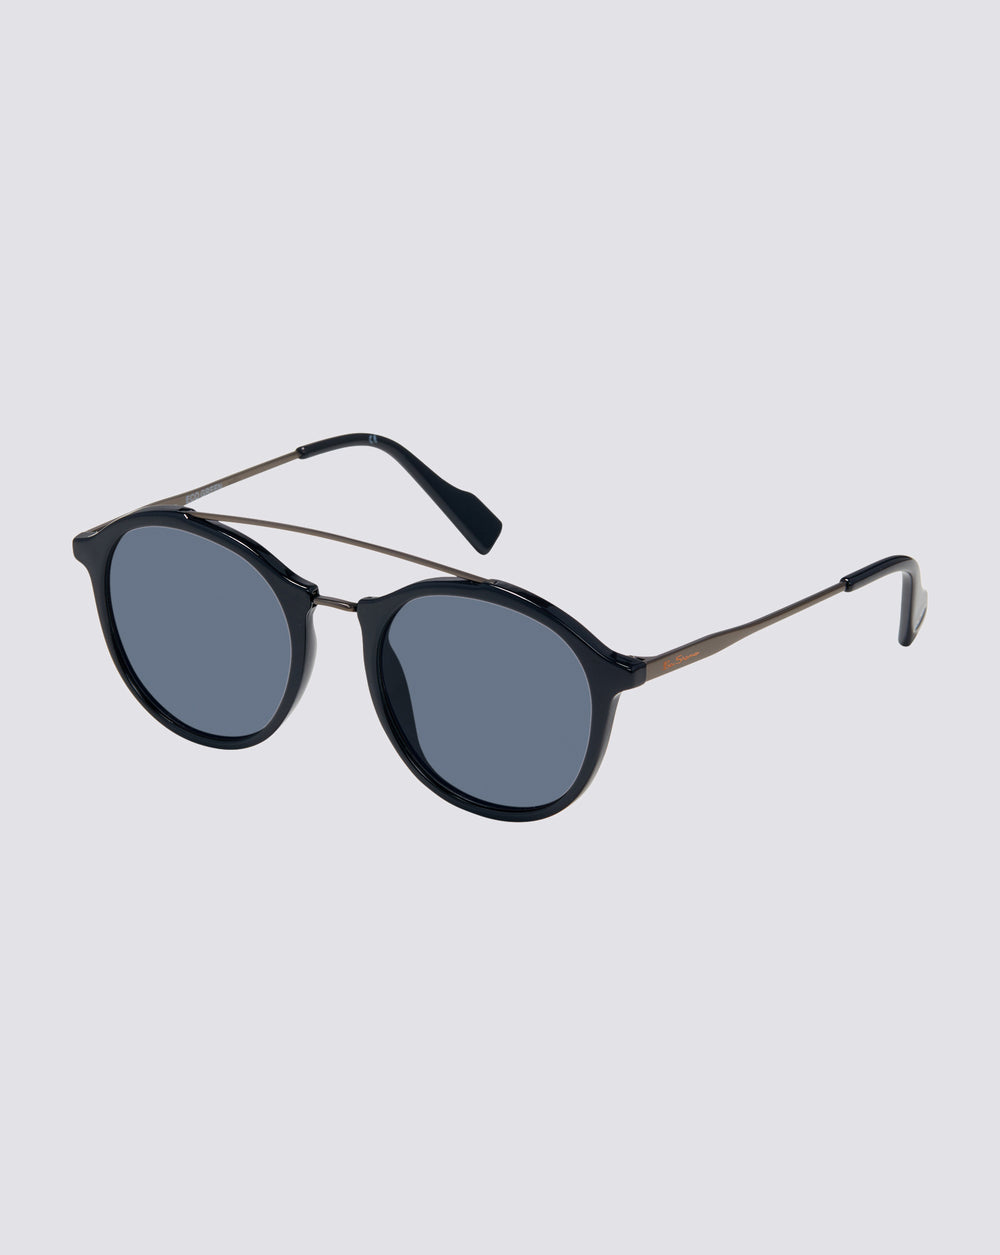 James Polarized Eco-Green Sunglasses - Navy